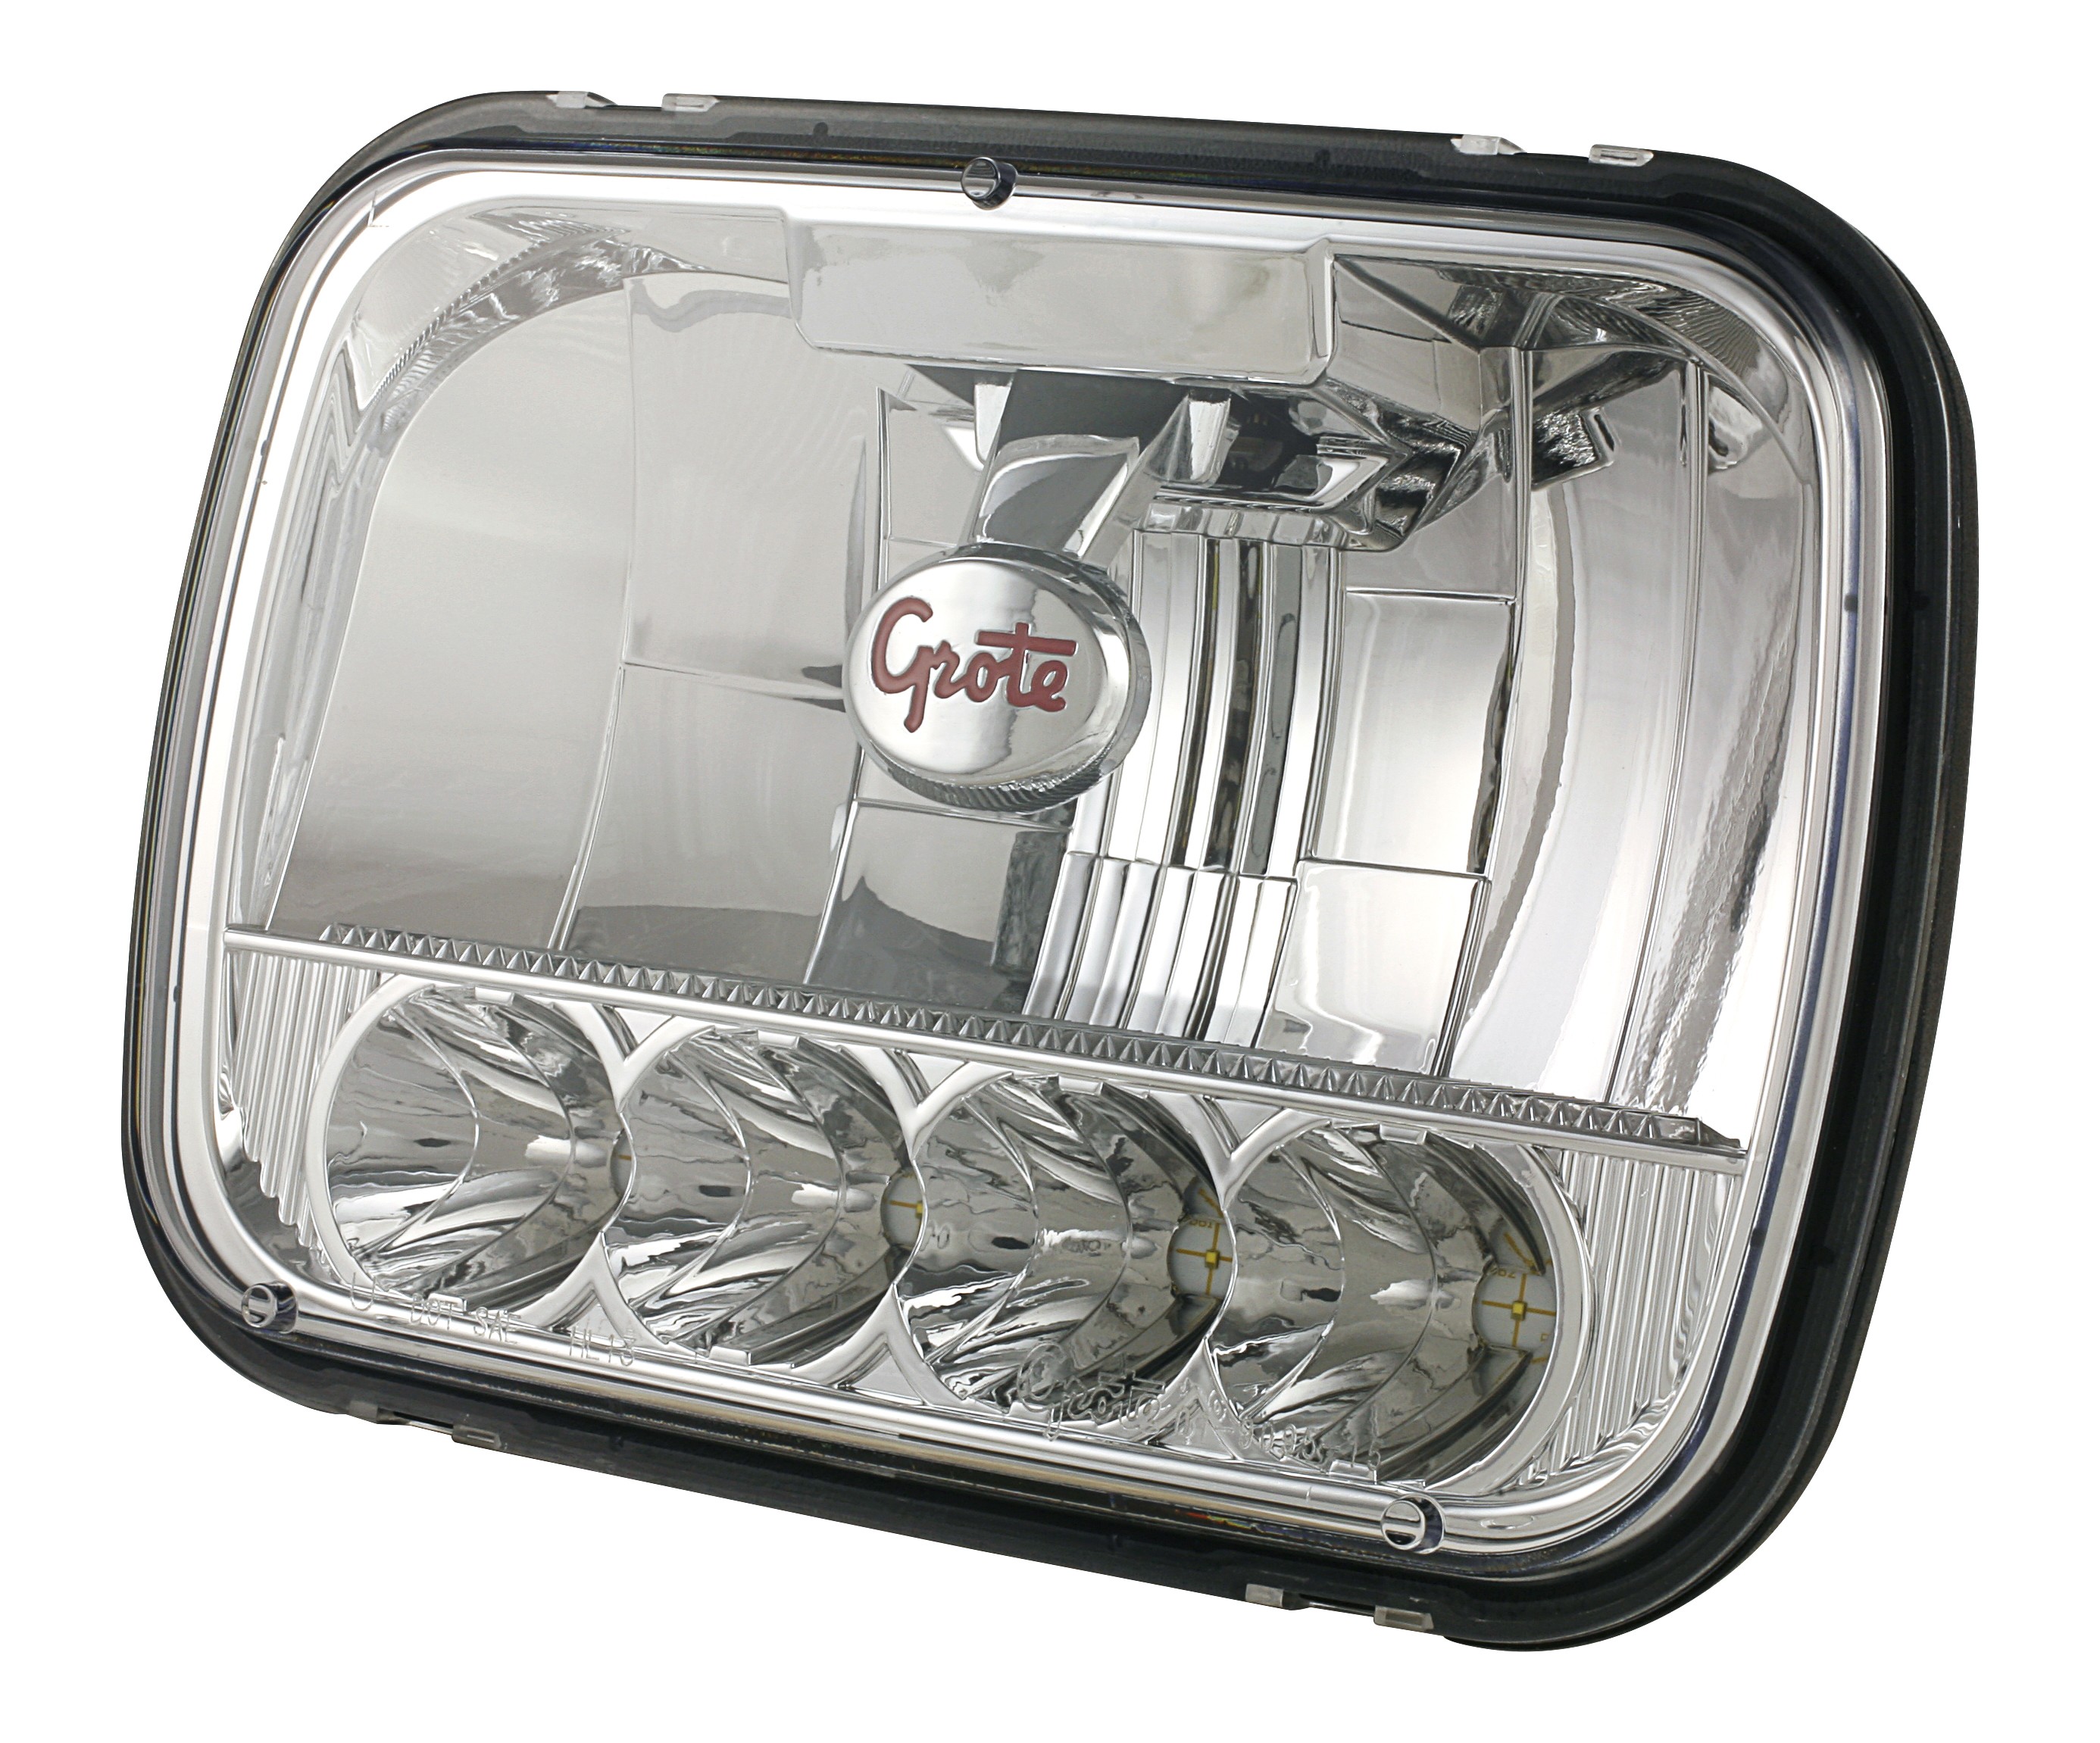 Grote Industries 5 – Grote 57 LED Sealed Beam Replacement Headlight